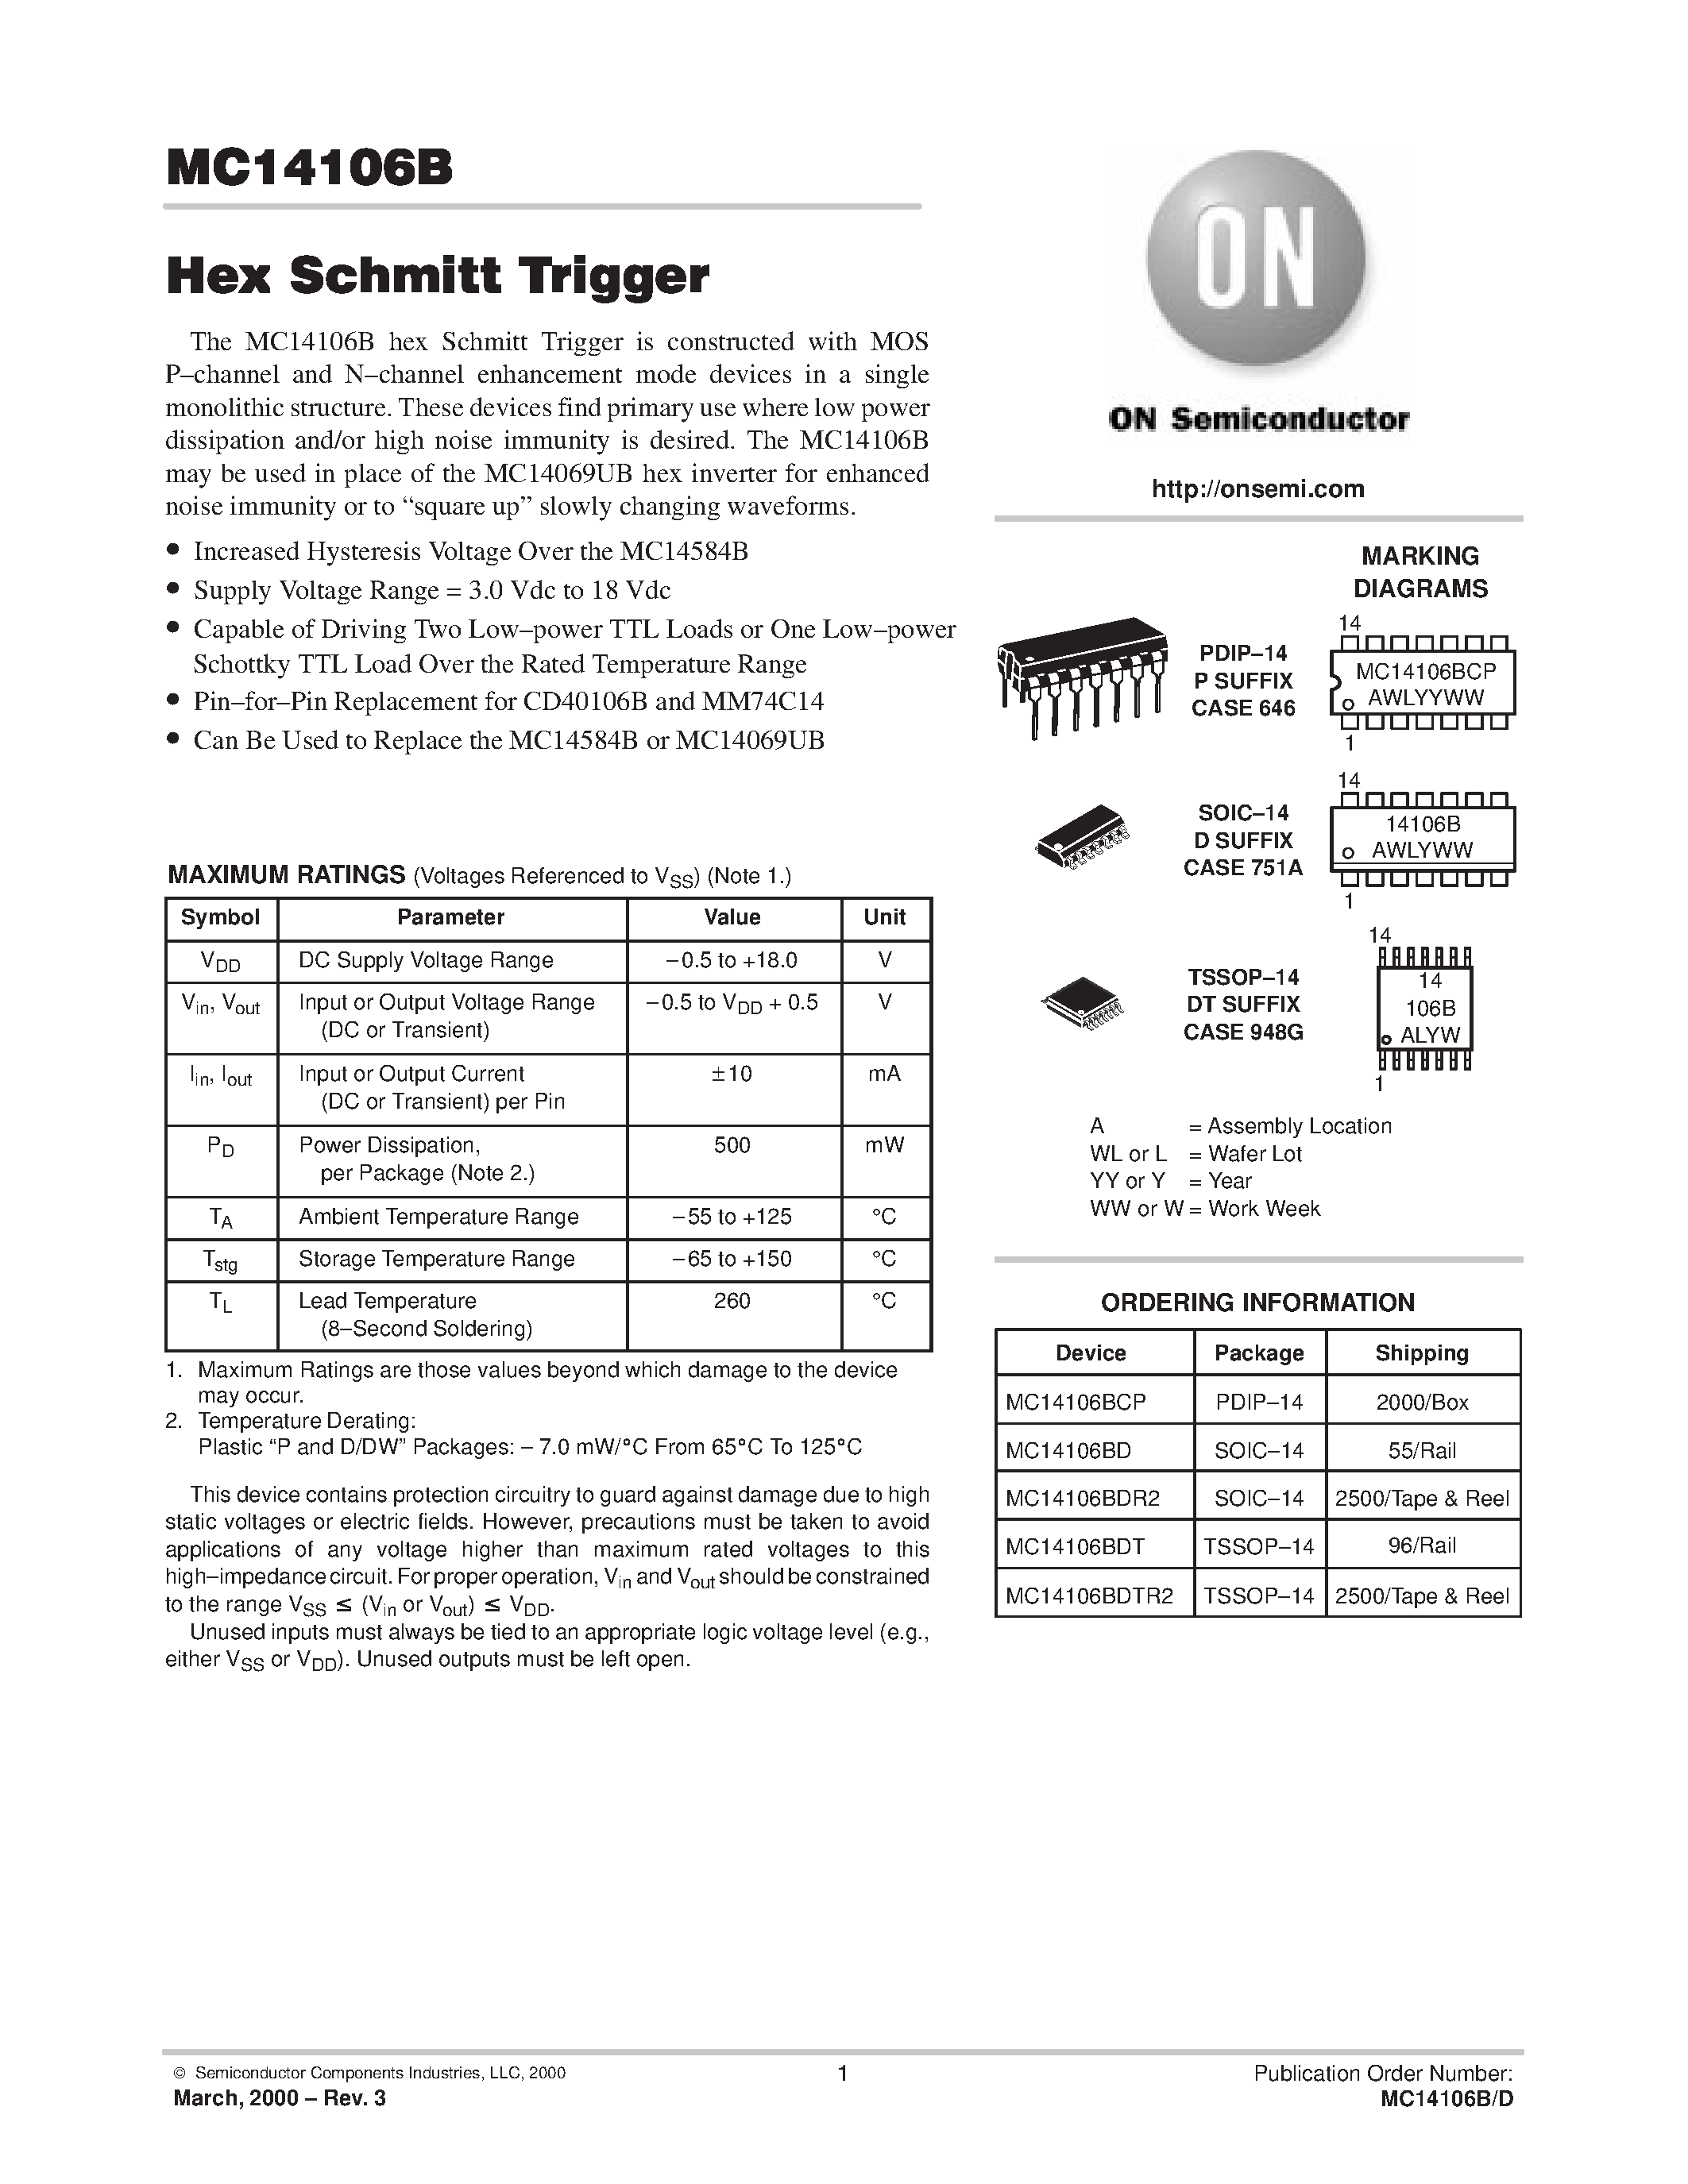 Datasheet MC14106BDR2 - Hex Schmitt Trigger page 1